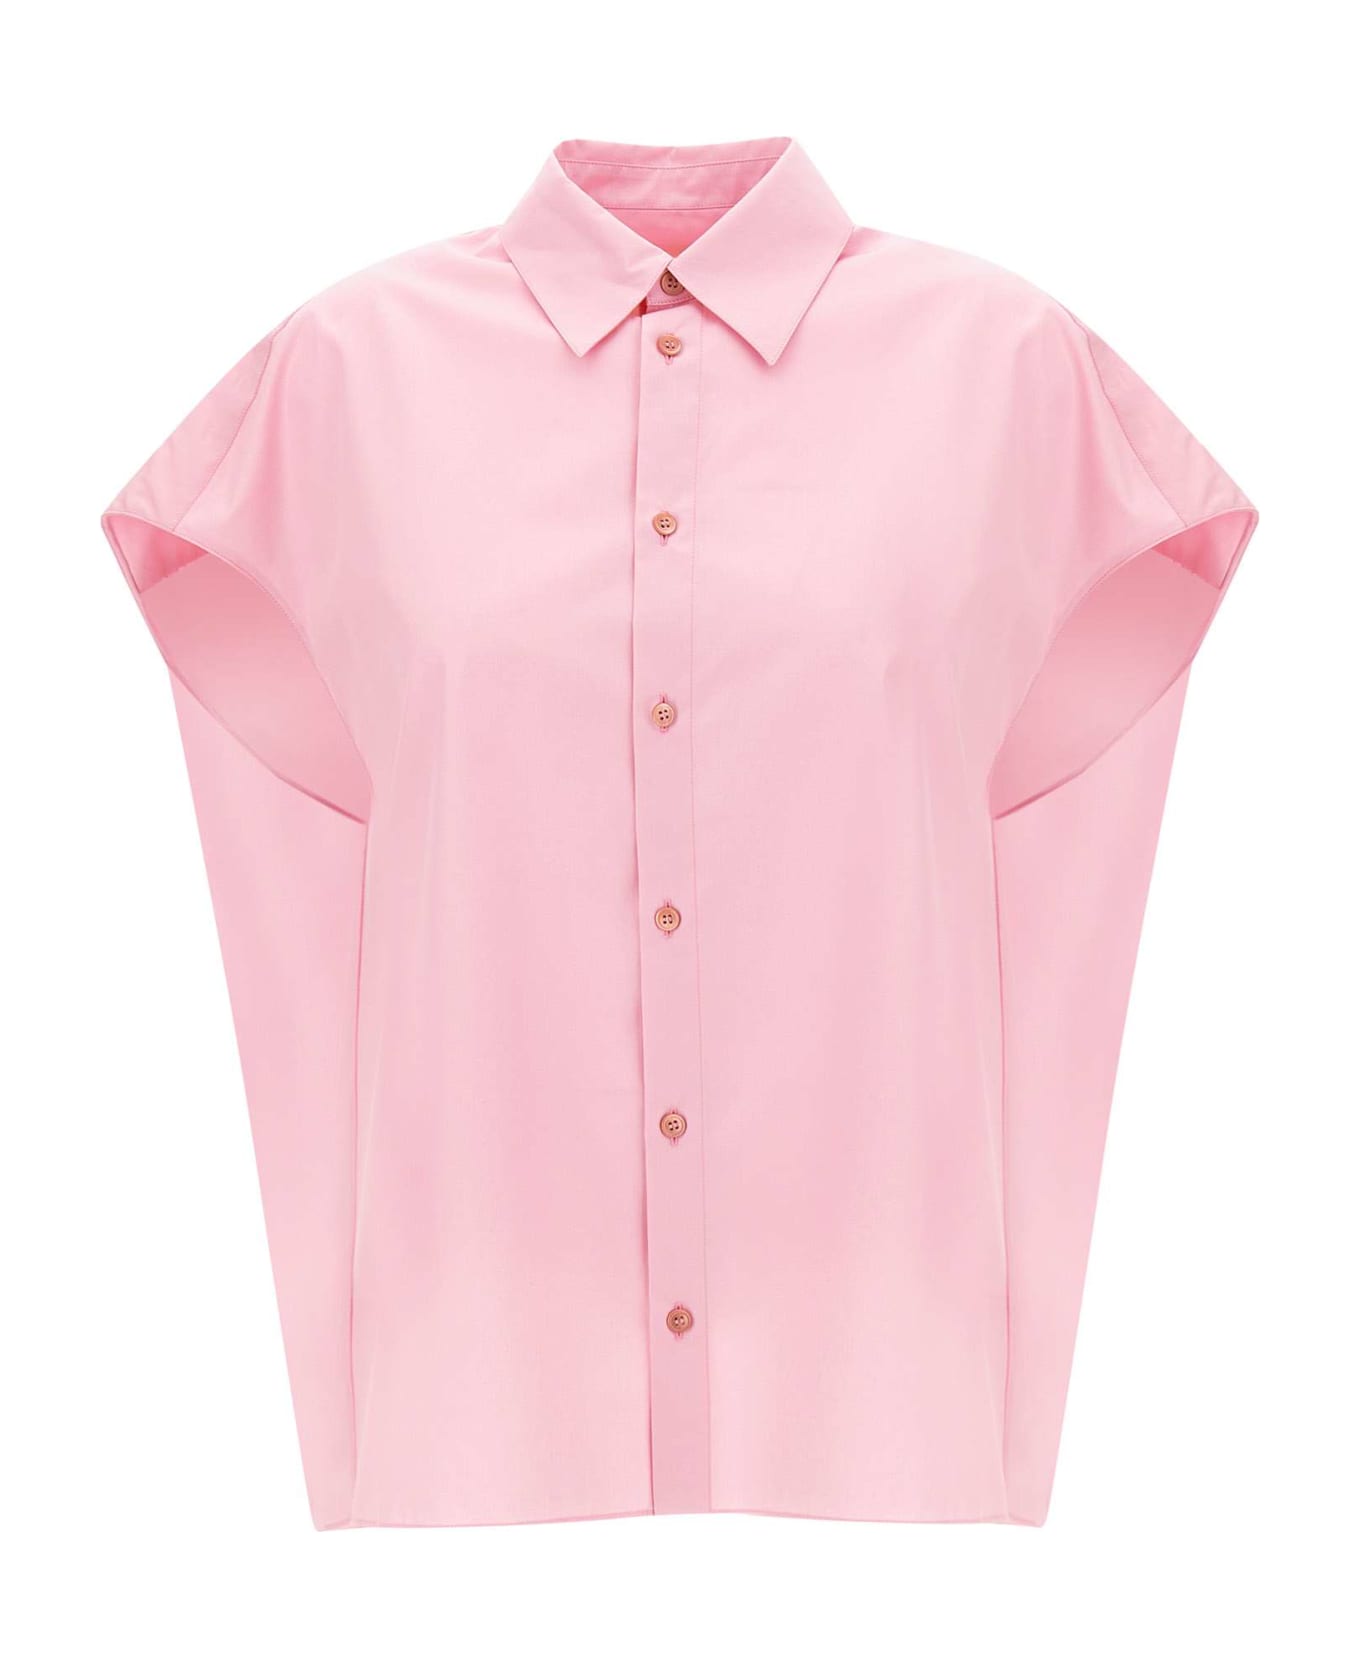 Marni Organic Cotton Poplin Shirt - PINK